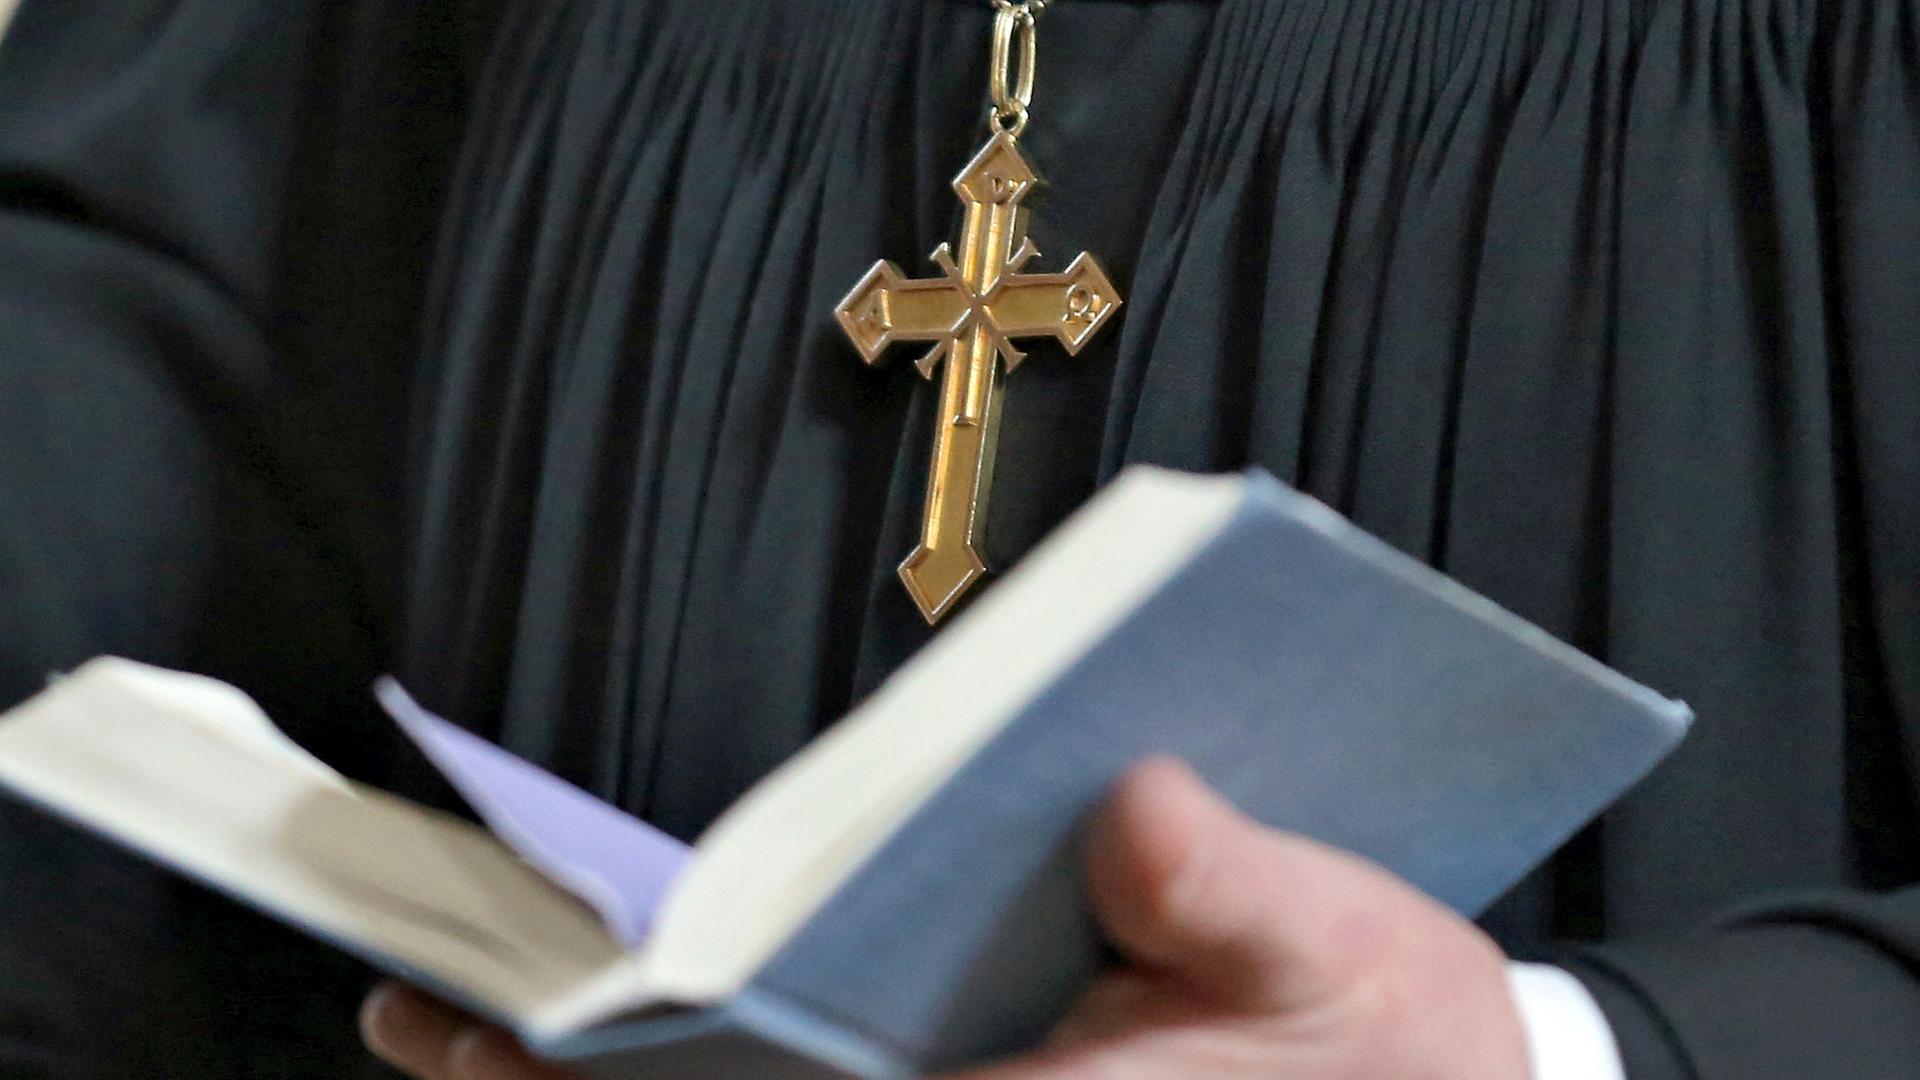 Ein Pfarrer mit Kreuzkette und schwarzem Gewand hält eine aufgeschlagene Bibel in seinen Händen.